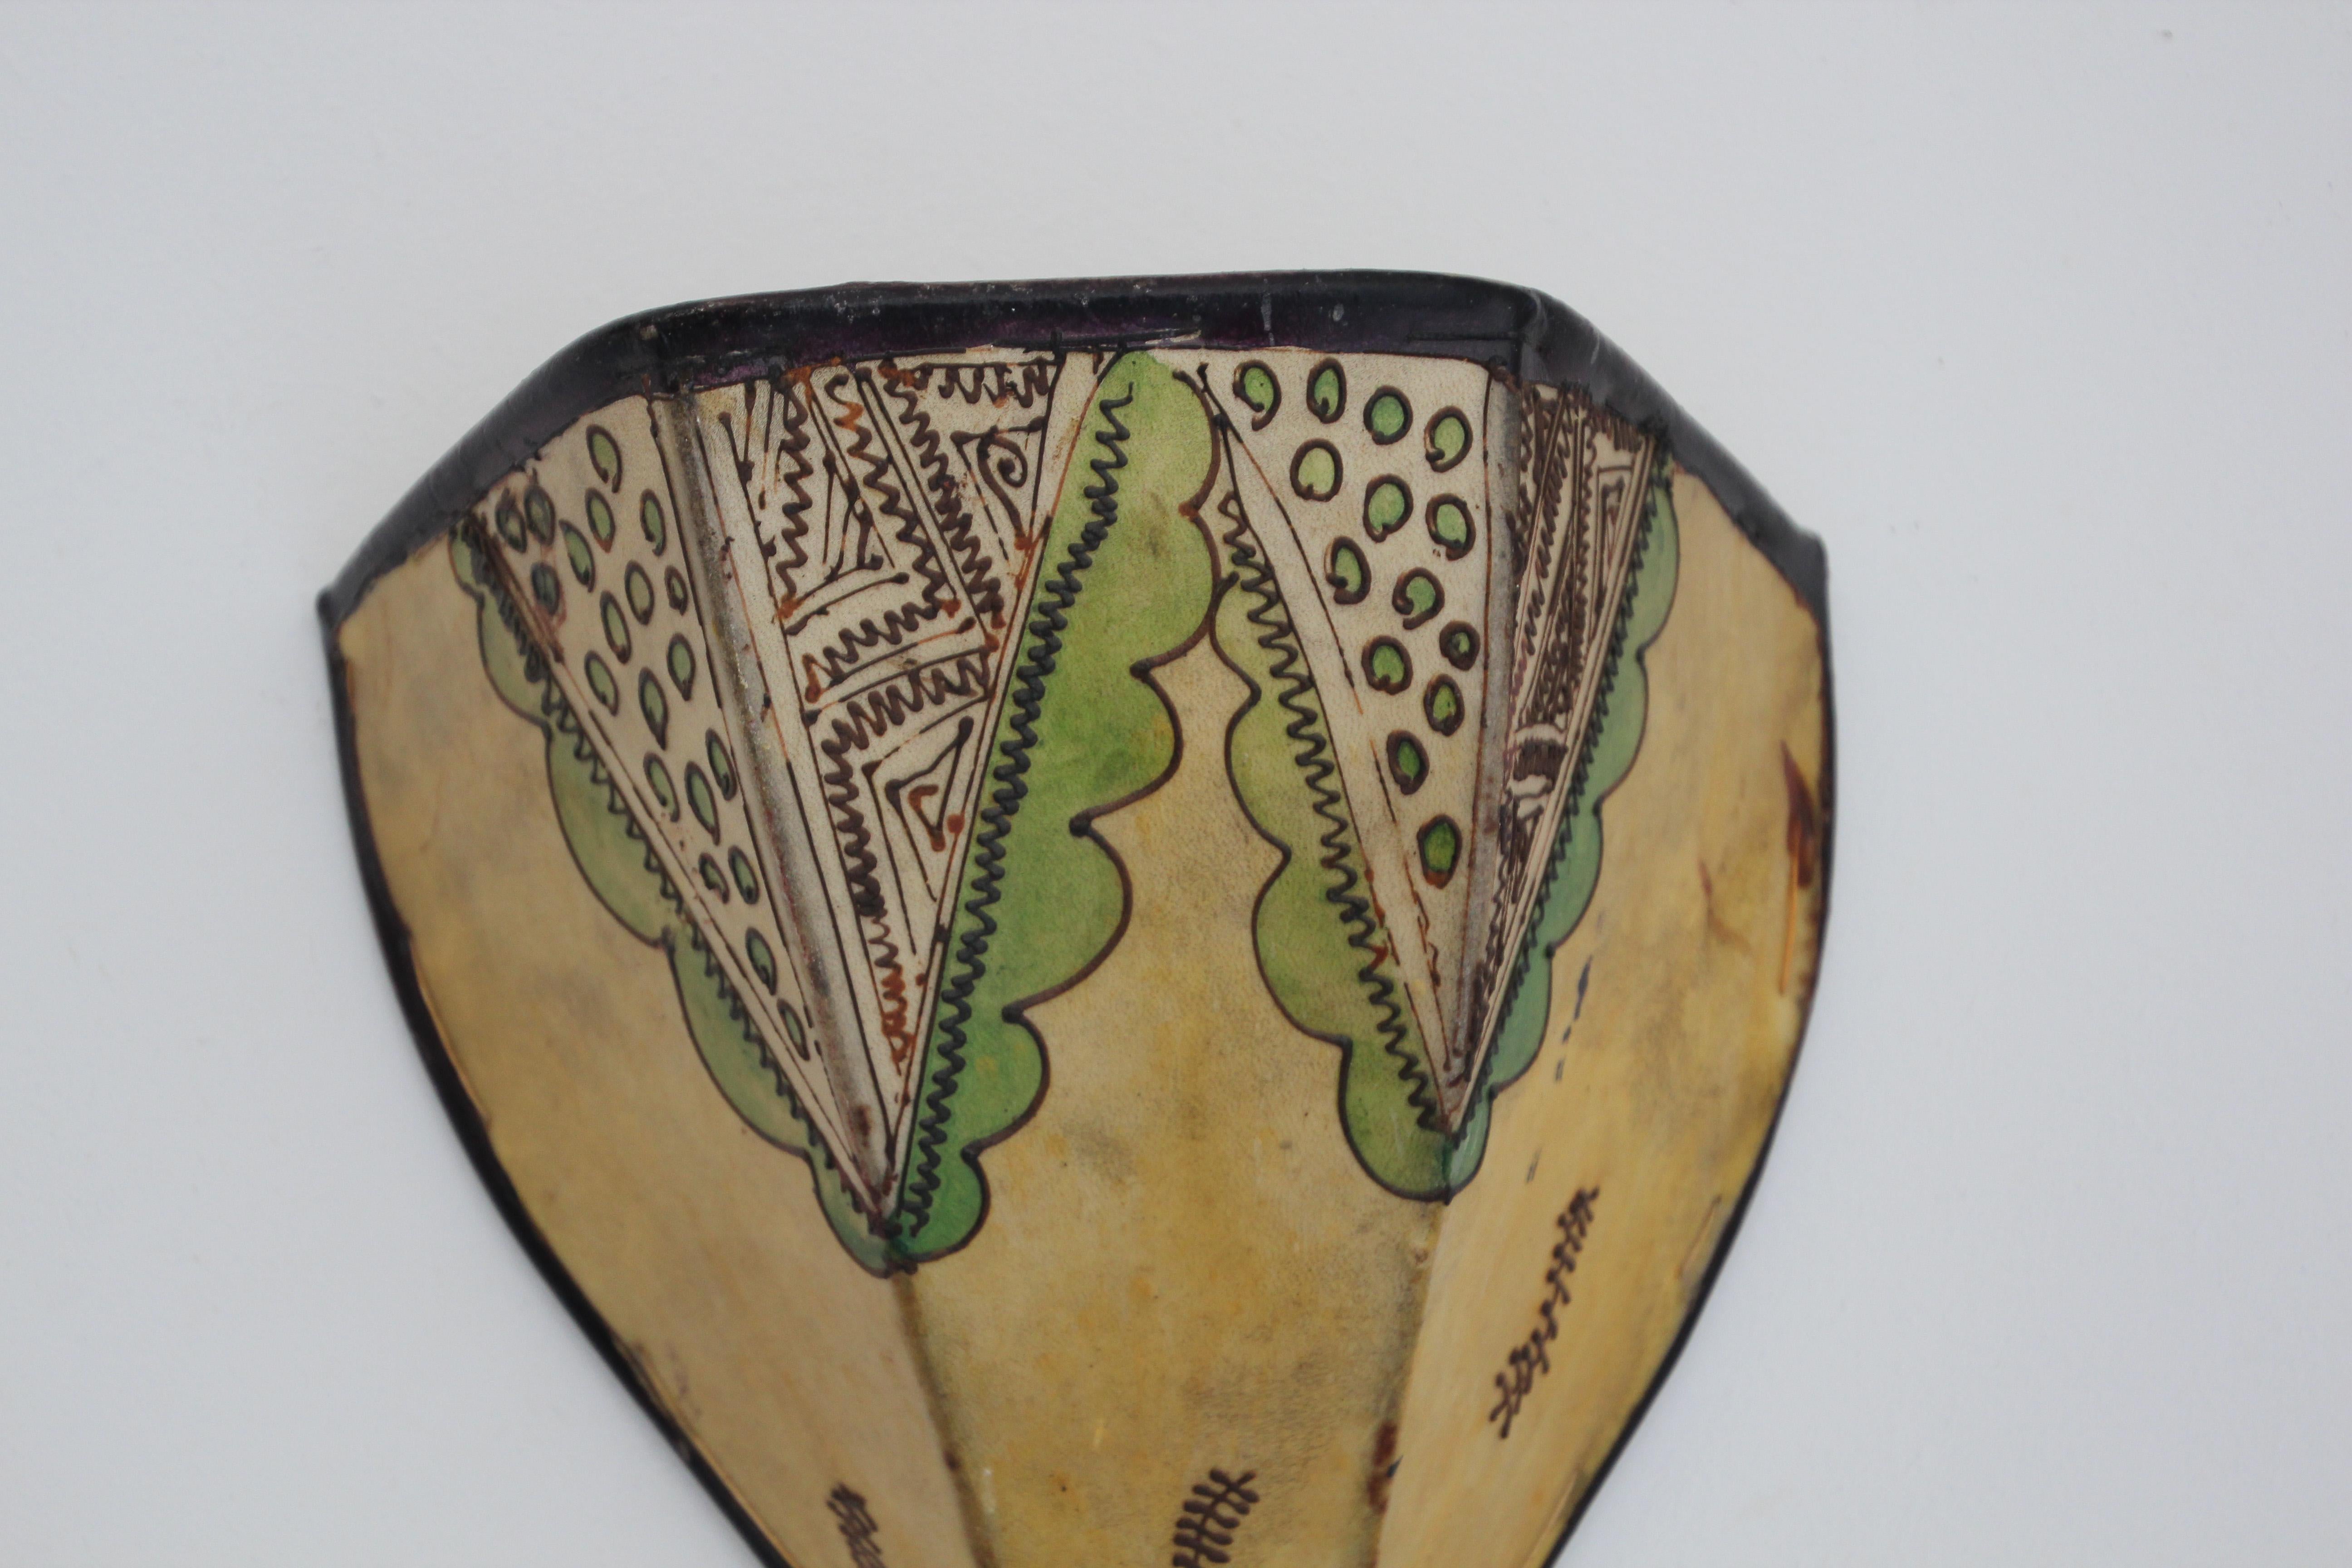 Afrikanischer Stammeskunst-Wandbehang aus Pergament mit einer großen geschwungenen Fellform, die auf Eisen genäht und von Hand bemalt ist.
Diese marokkanischen Kunstwerke können als Lampenschirm für die Wand verwendet werden.
Der mit Pergament